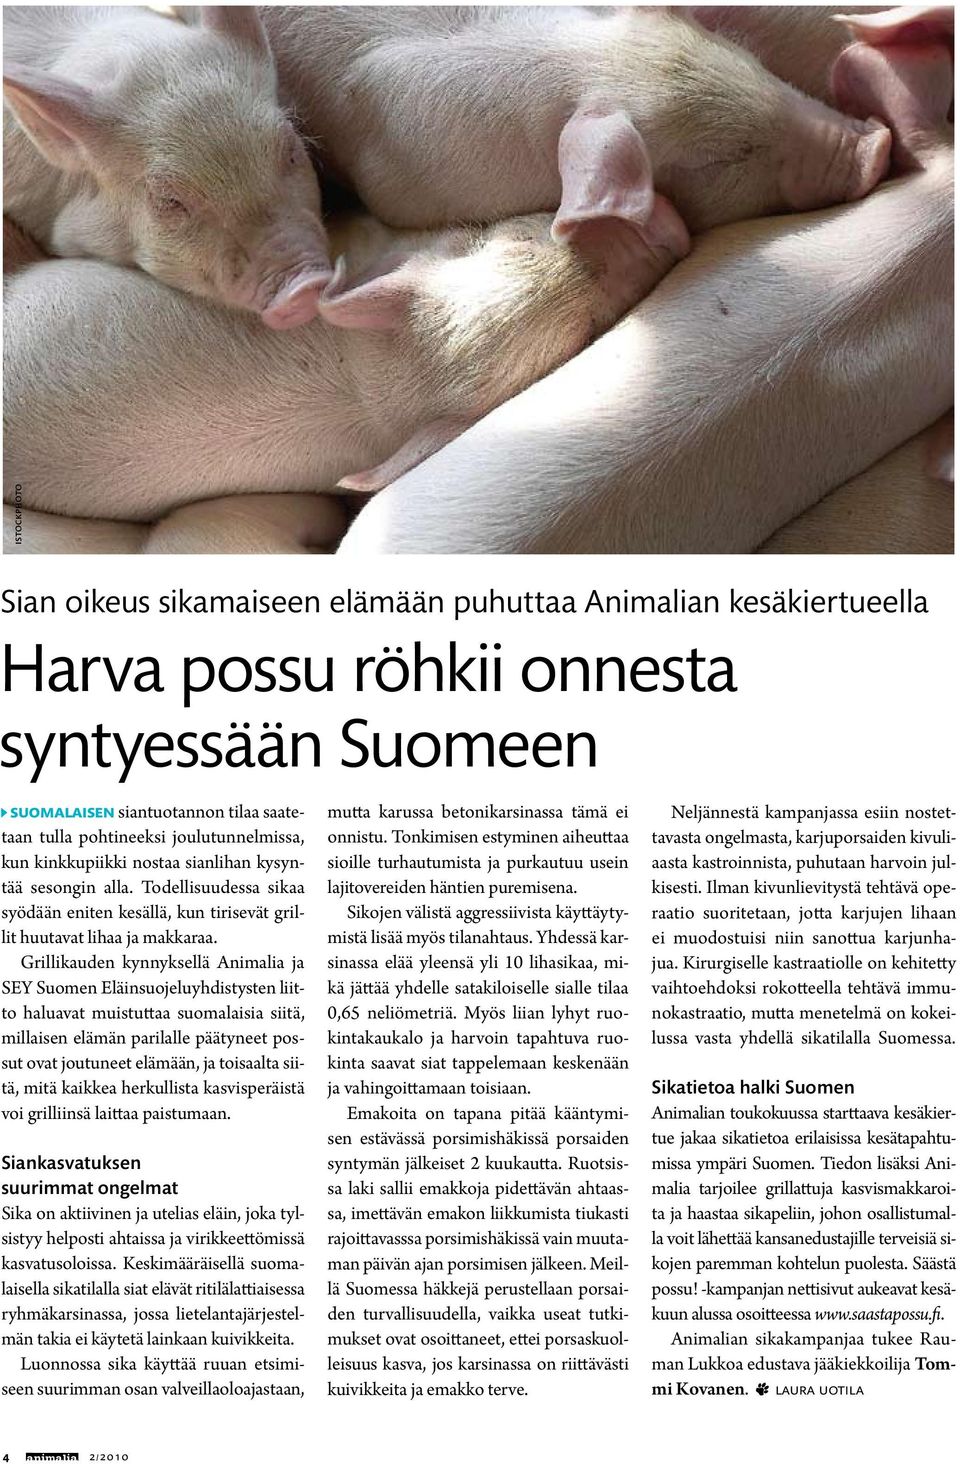 Grillikauden kynnyksellä Animalia ja SEY Suomen Eläinsuojeluyhdistysten liitto haluavat muistuttaa suomalaisia siitä, millaisen elämän parilalle päätyneet possut ovat joutuneet elämään, ja toisaalta